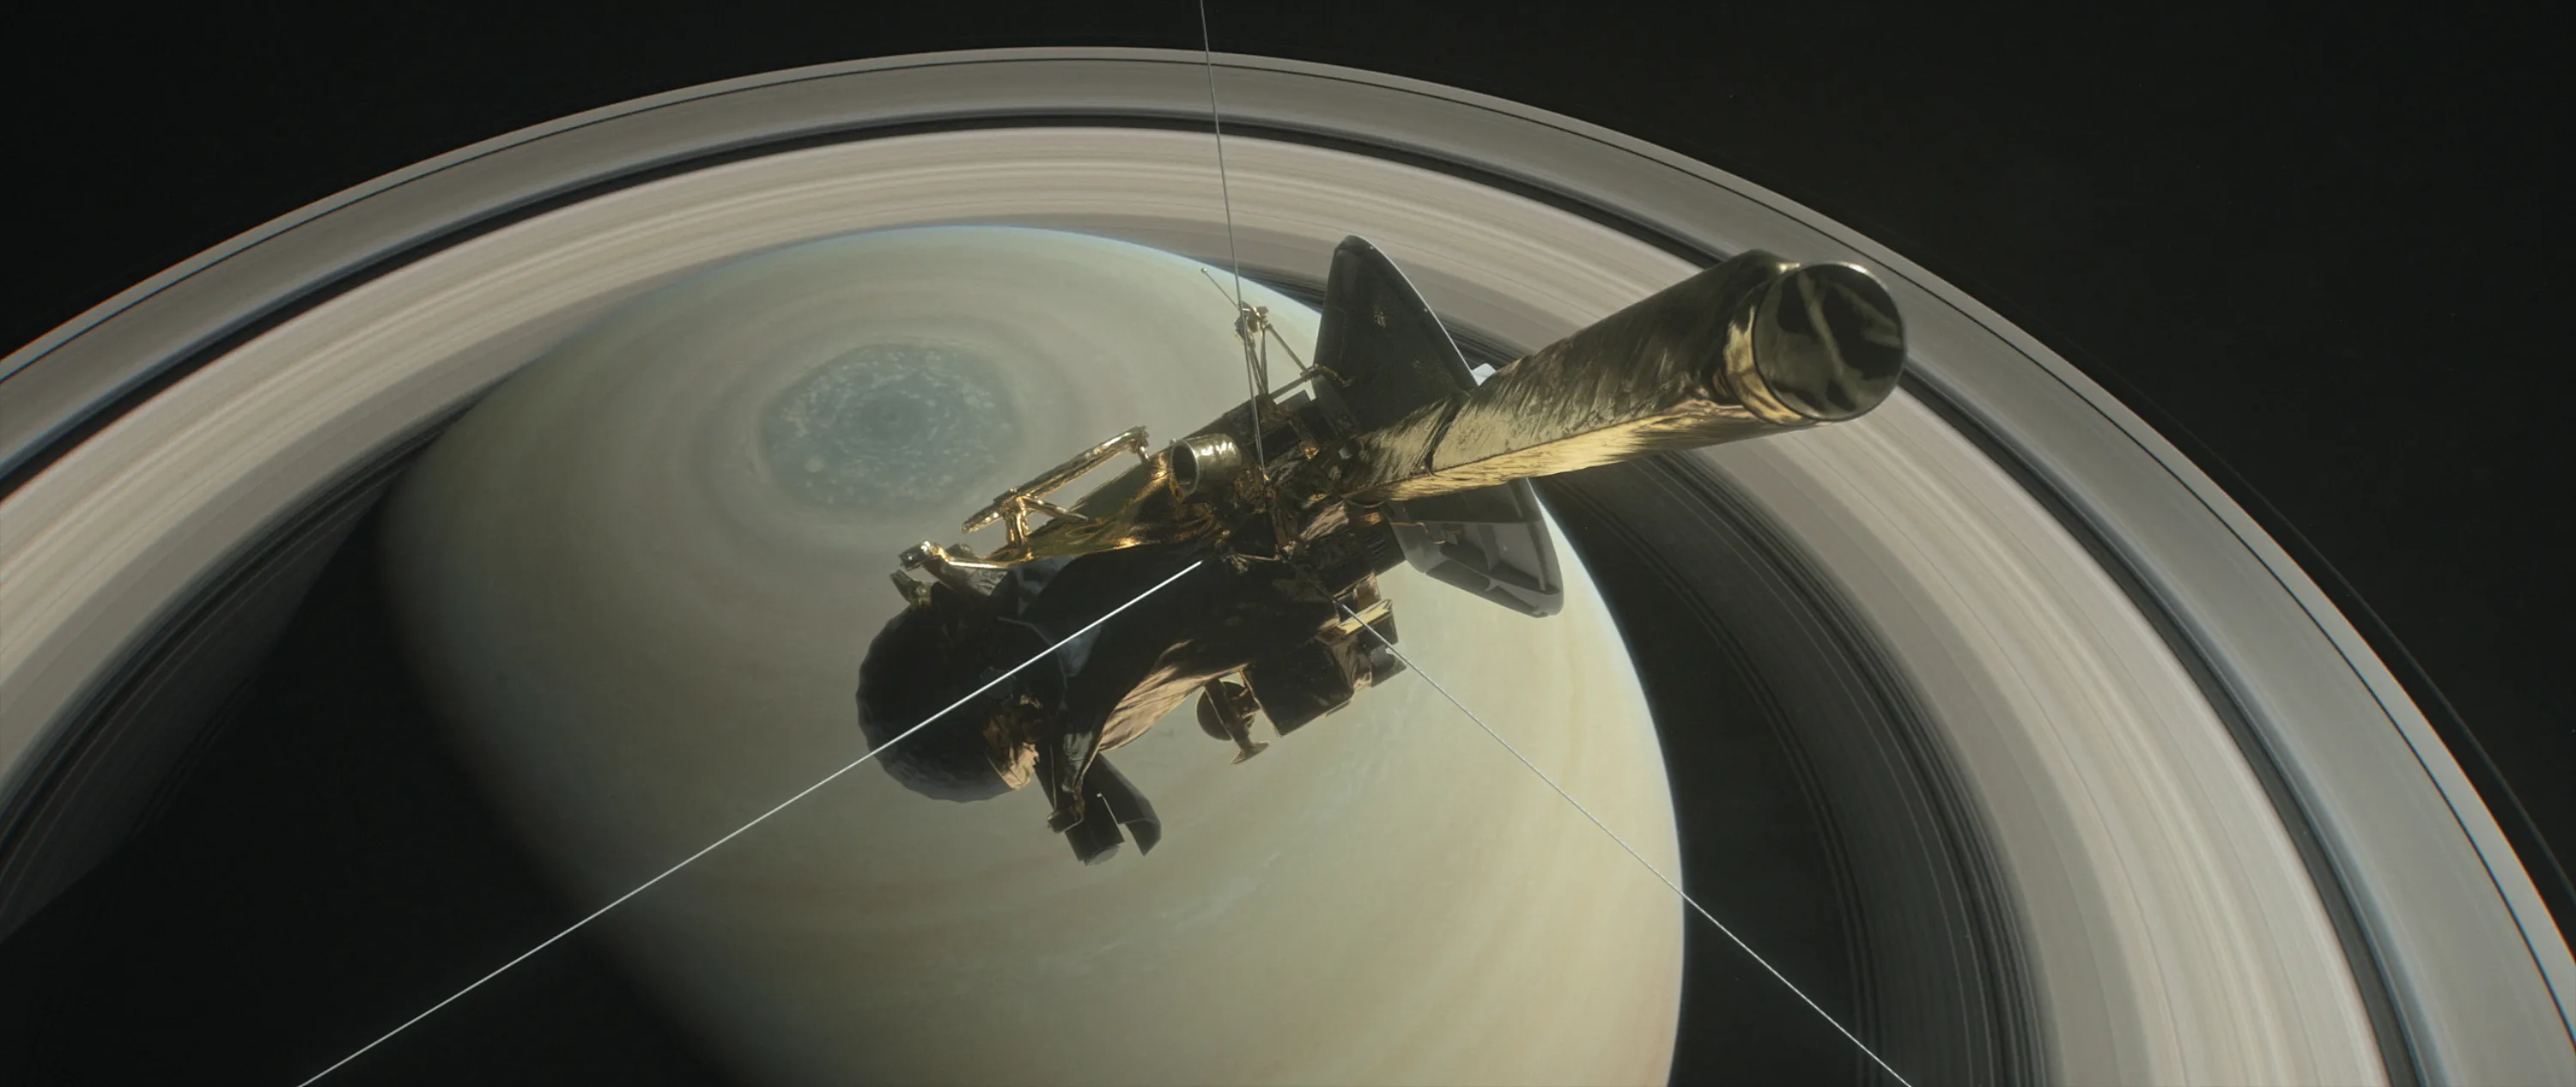 Sonda Cassini 'mergulha' nos aneis de Saturno; veja vídeo